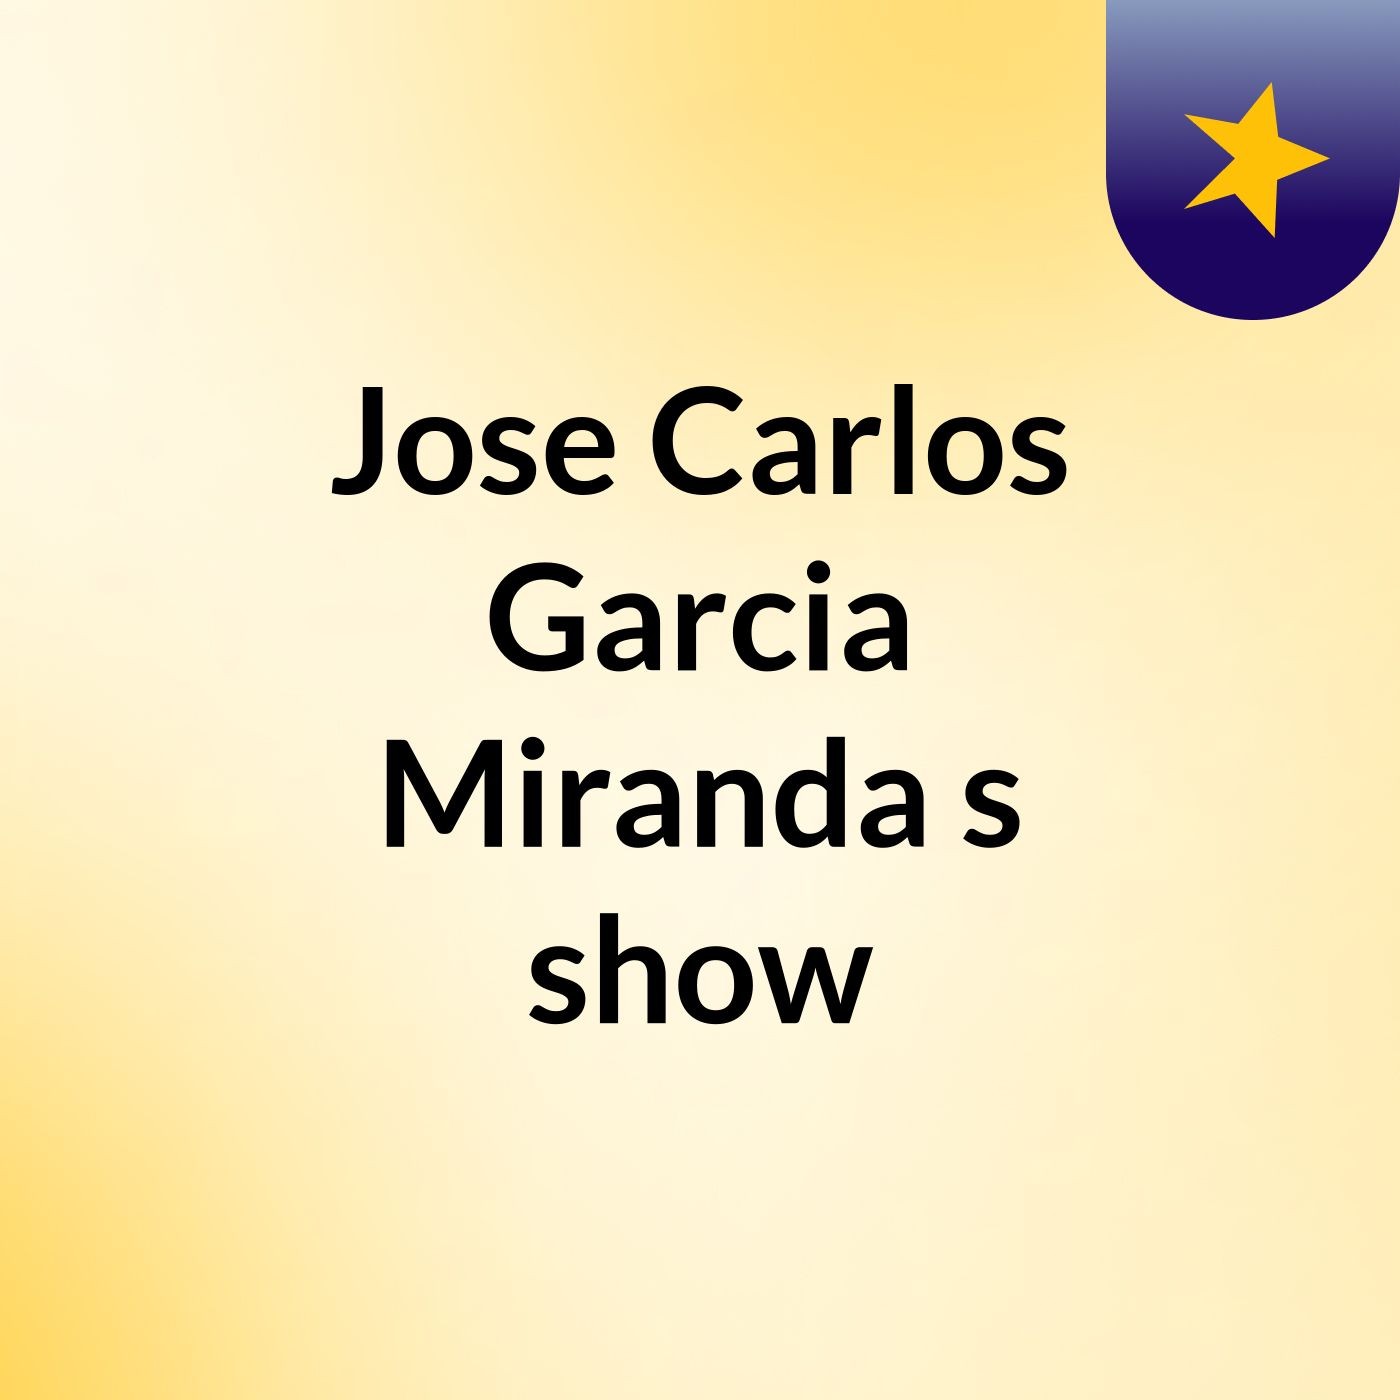 Jose Carlos Garcia Miranda's show